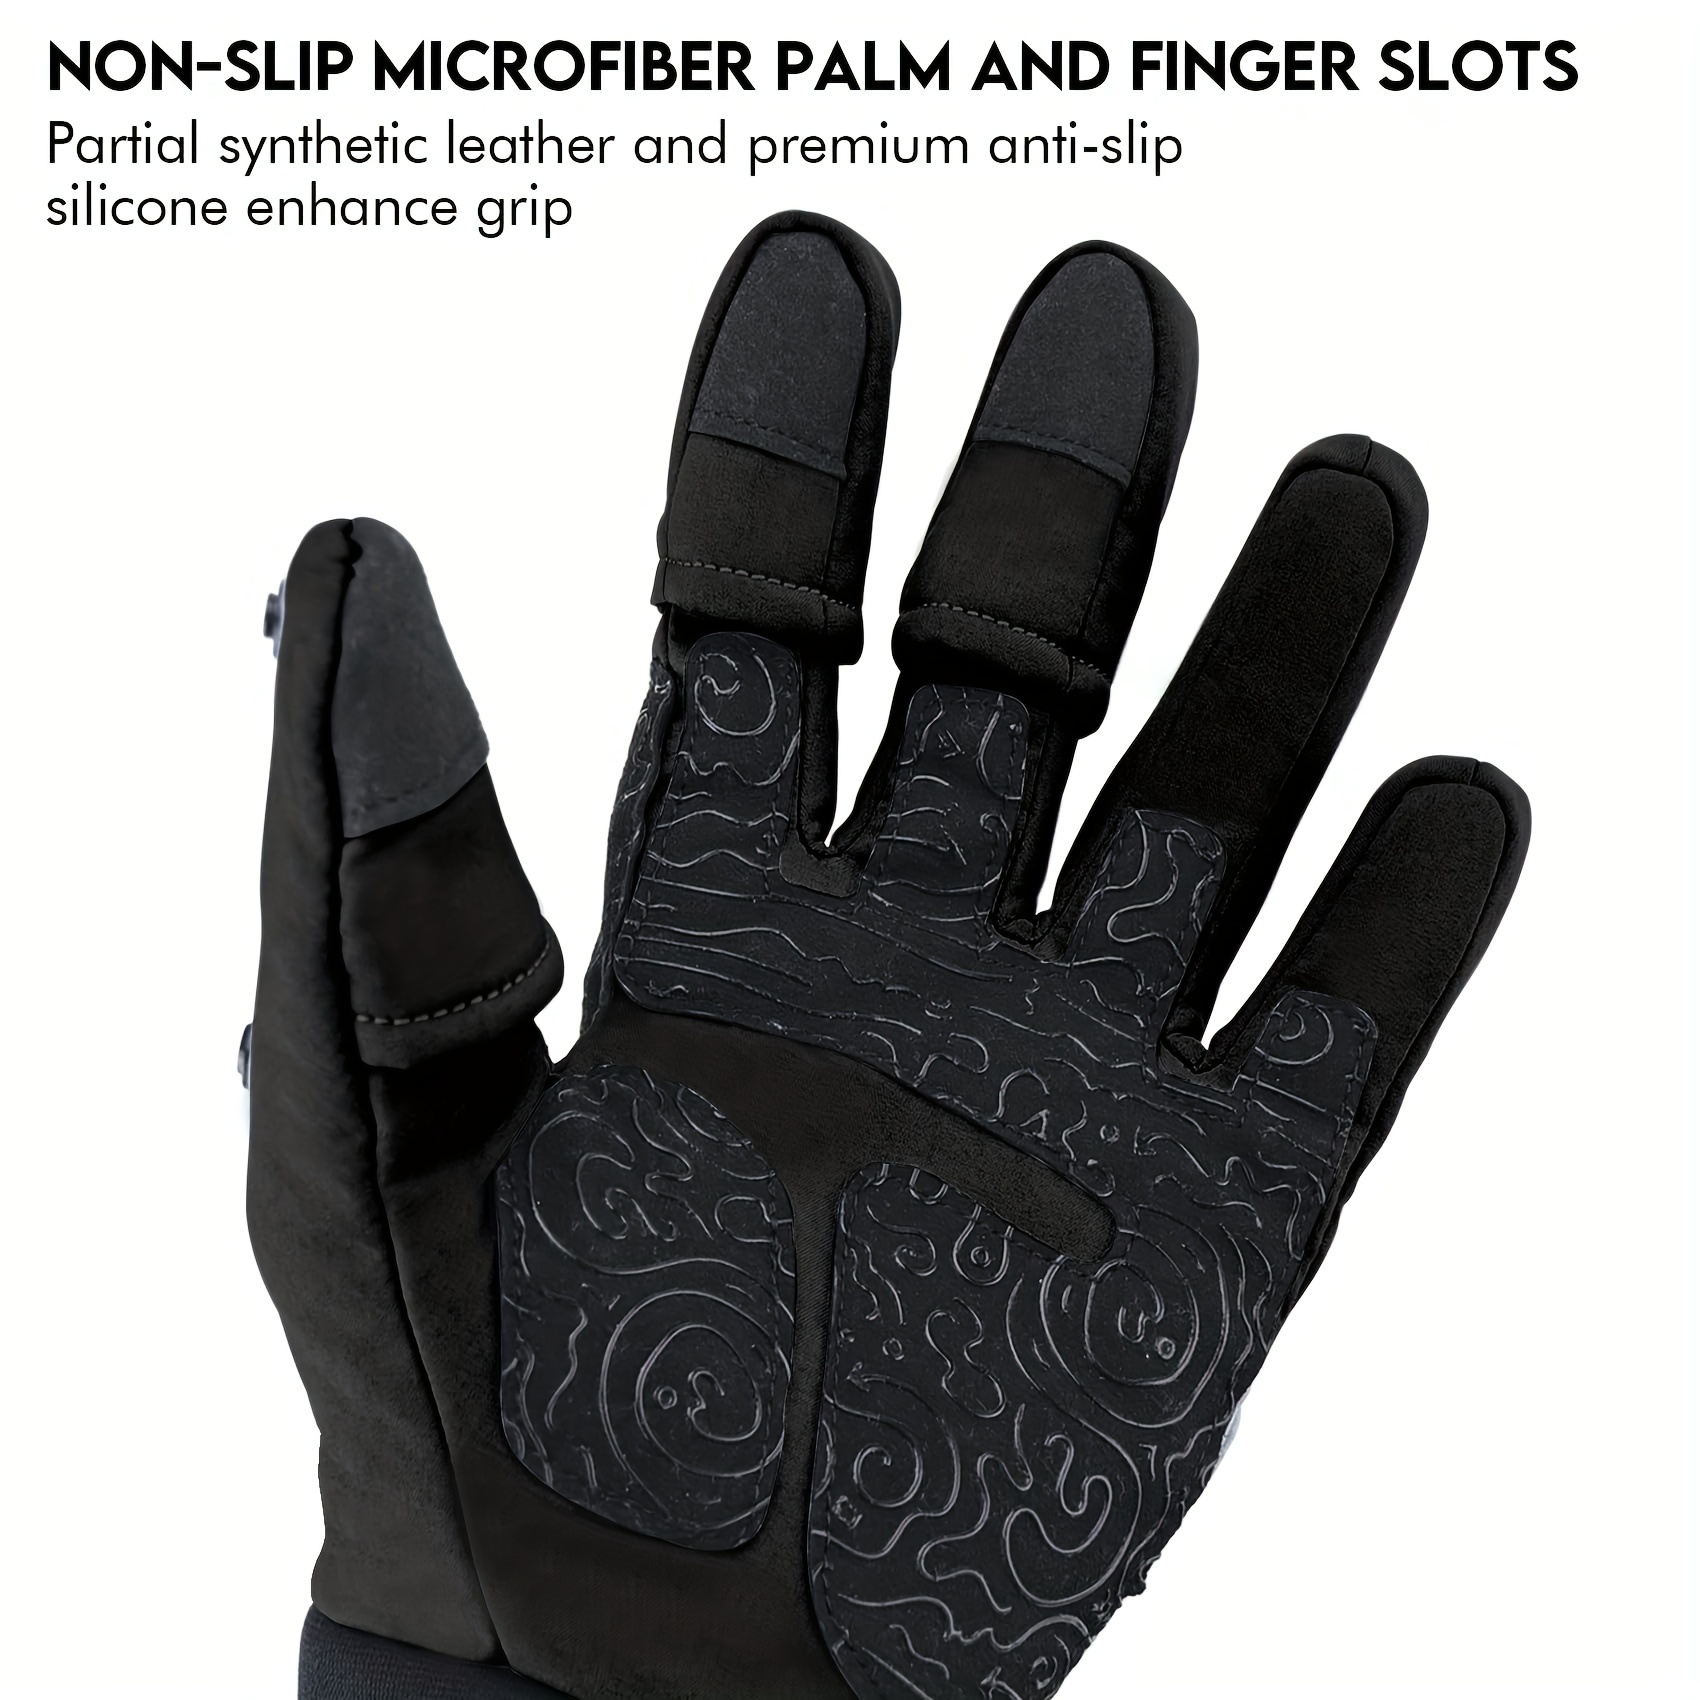 Winter Fishing Gloves Waterproof Mitten 3 Fingers Cut Anti-slip